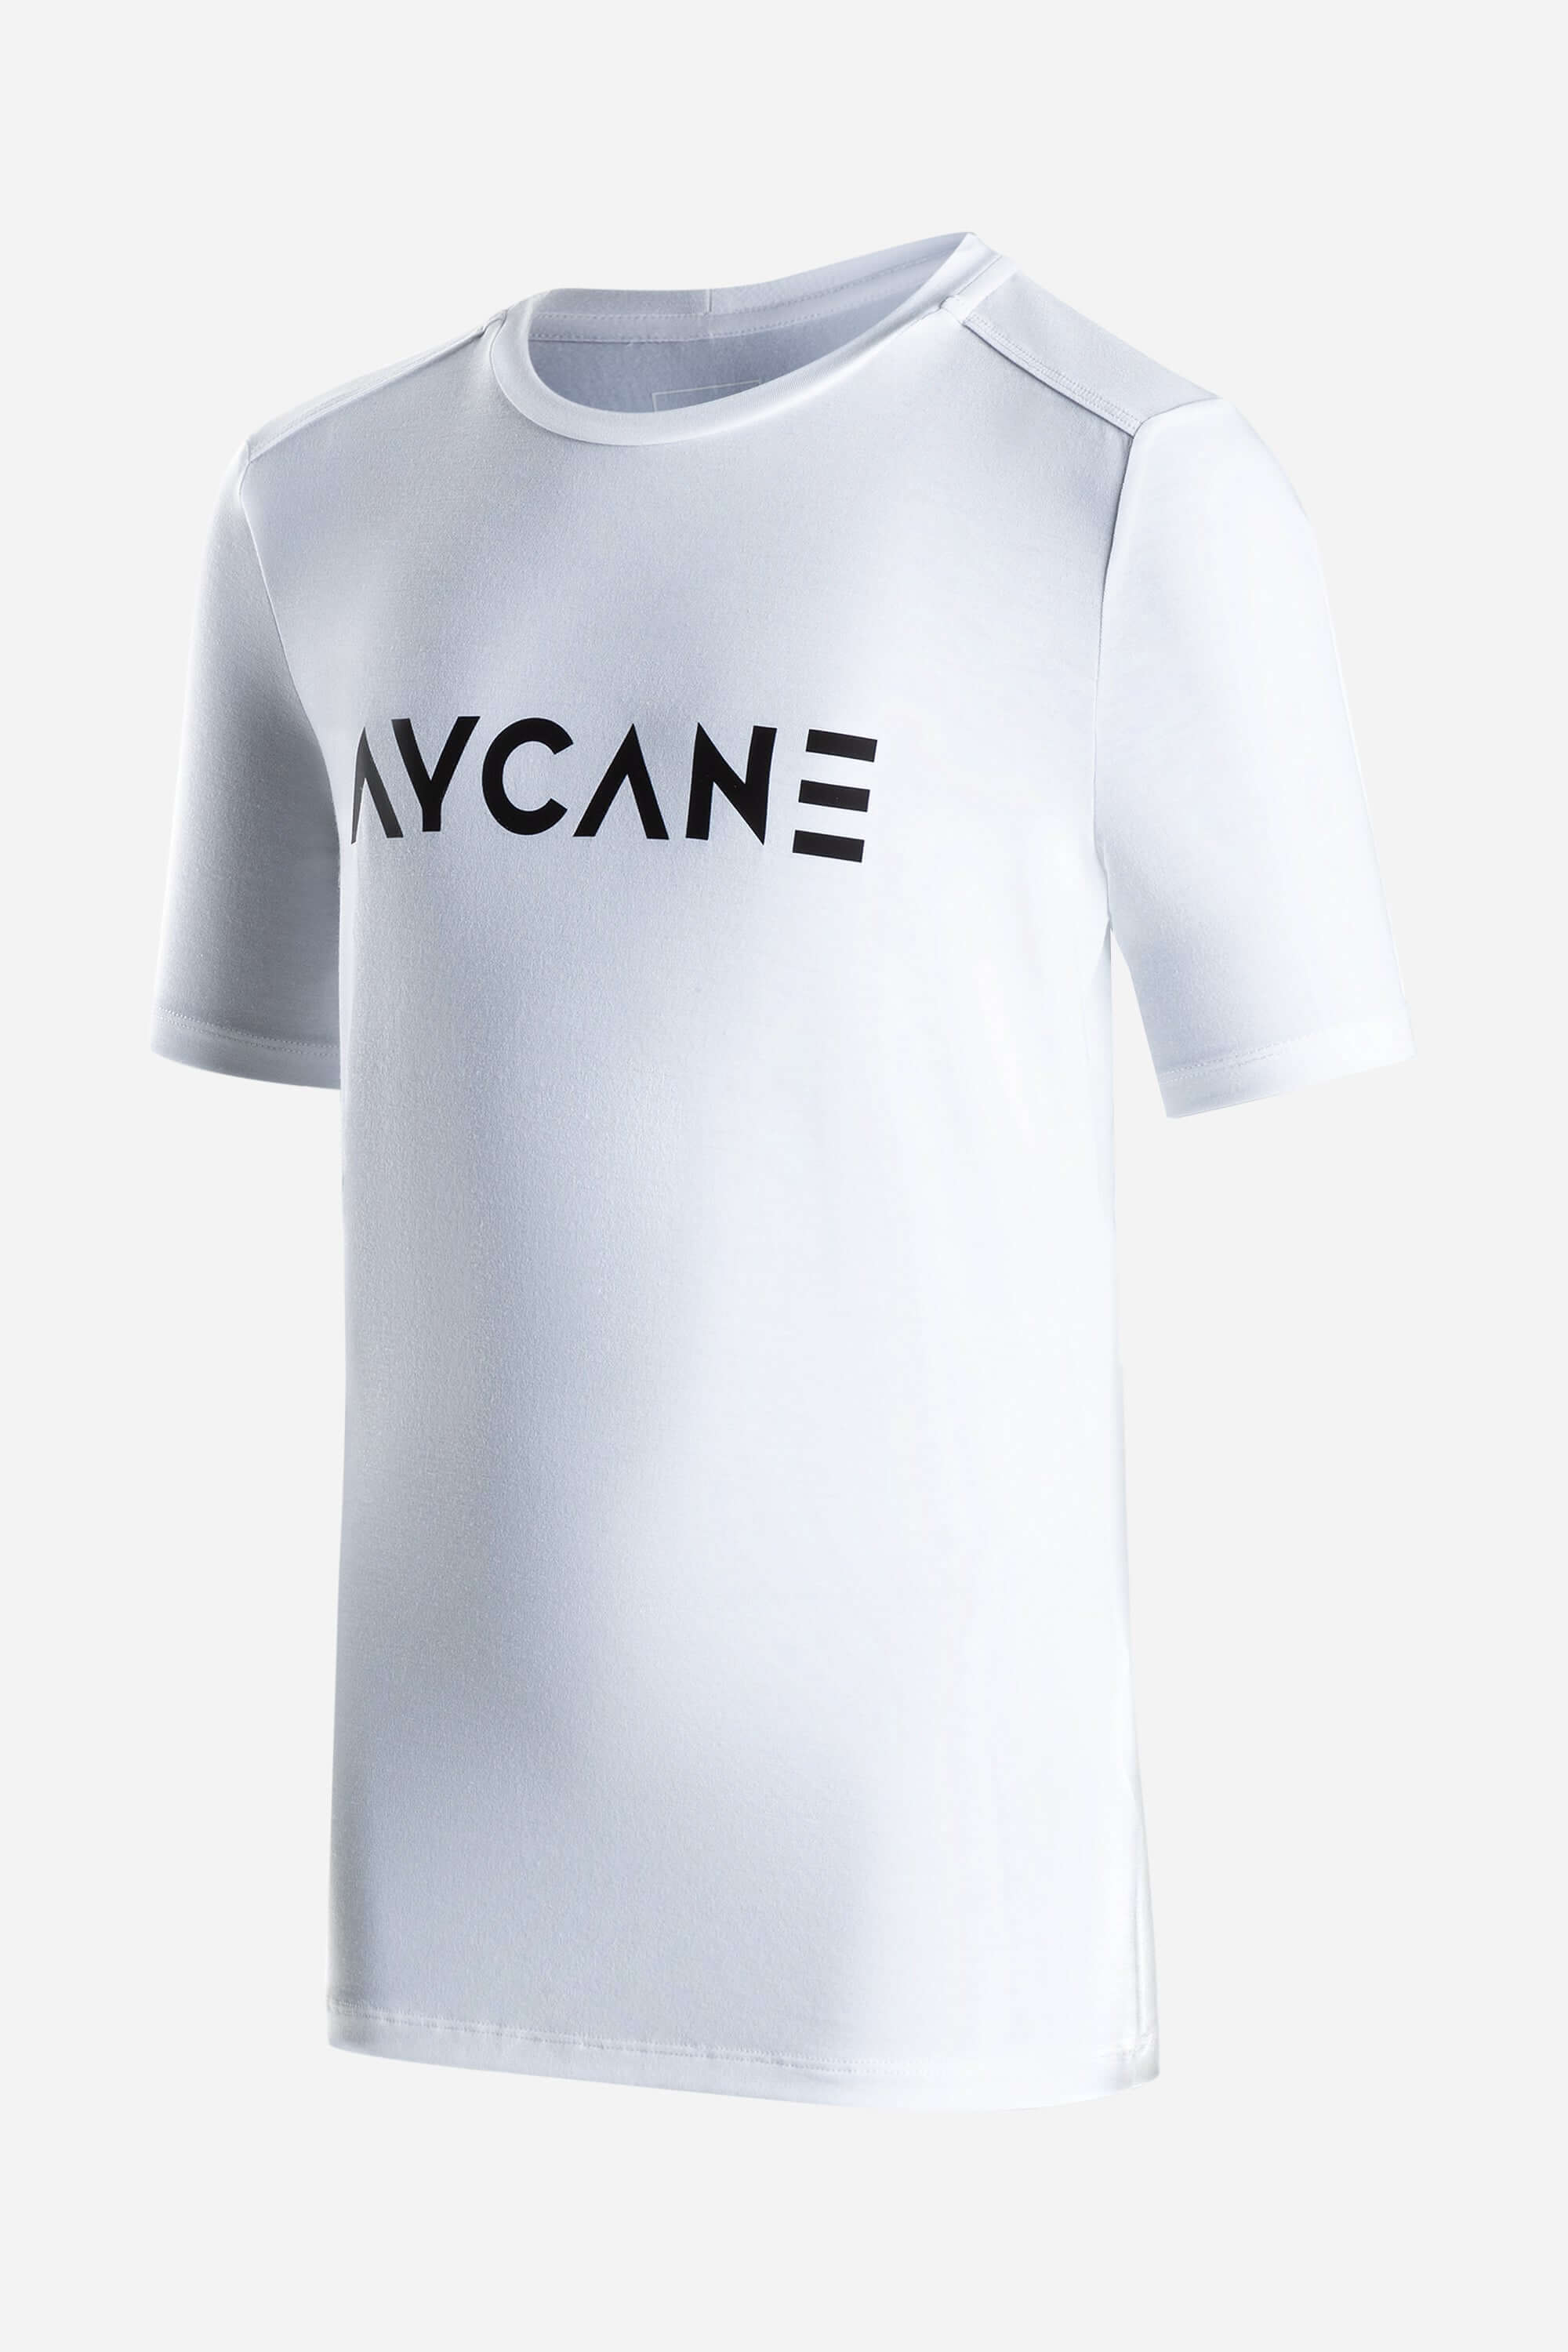 Youth white AYCANE t-shirt short sleeve with big black logo on chest